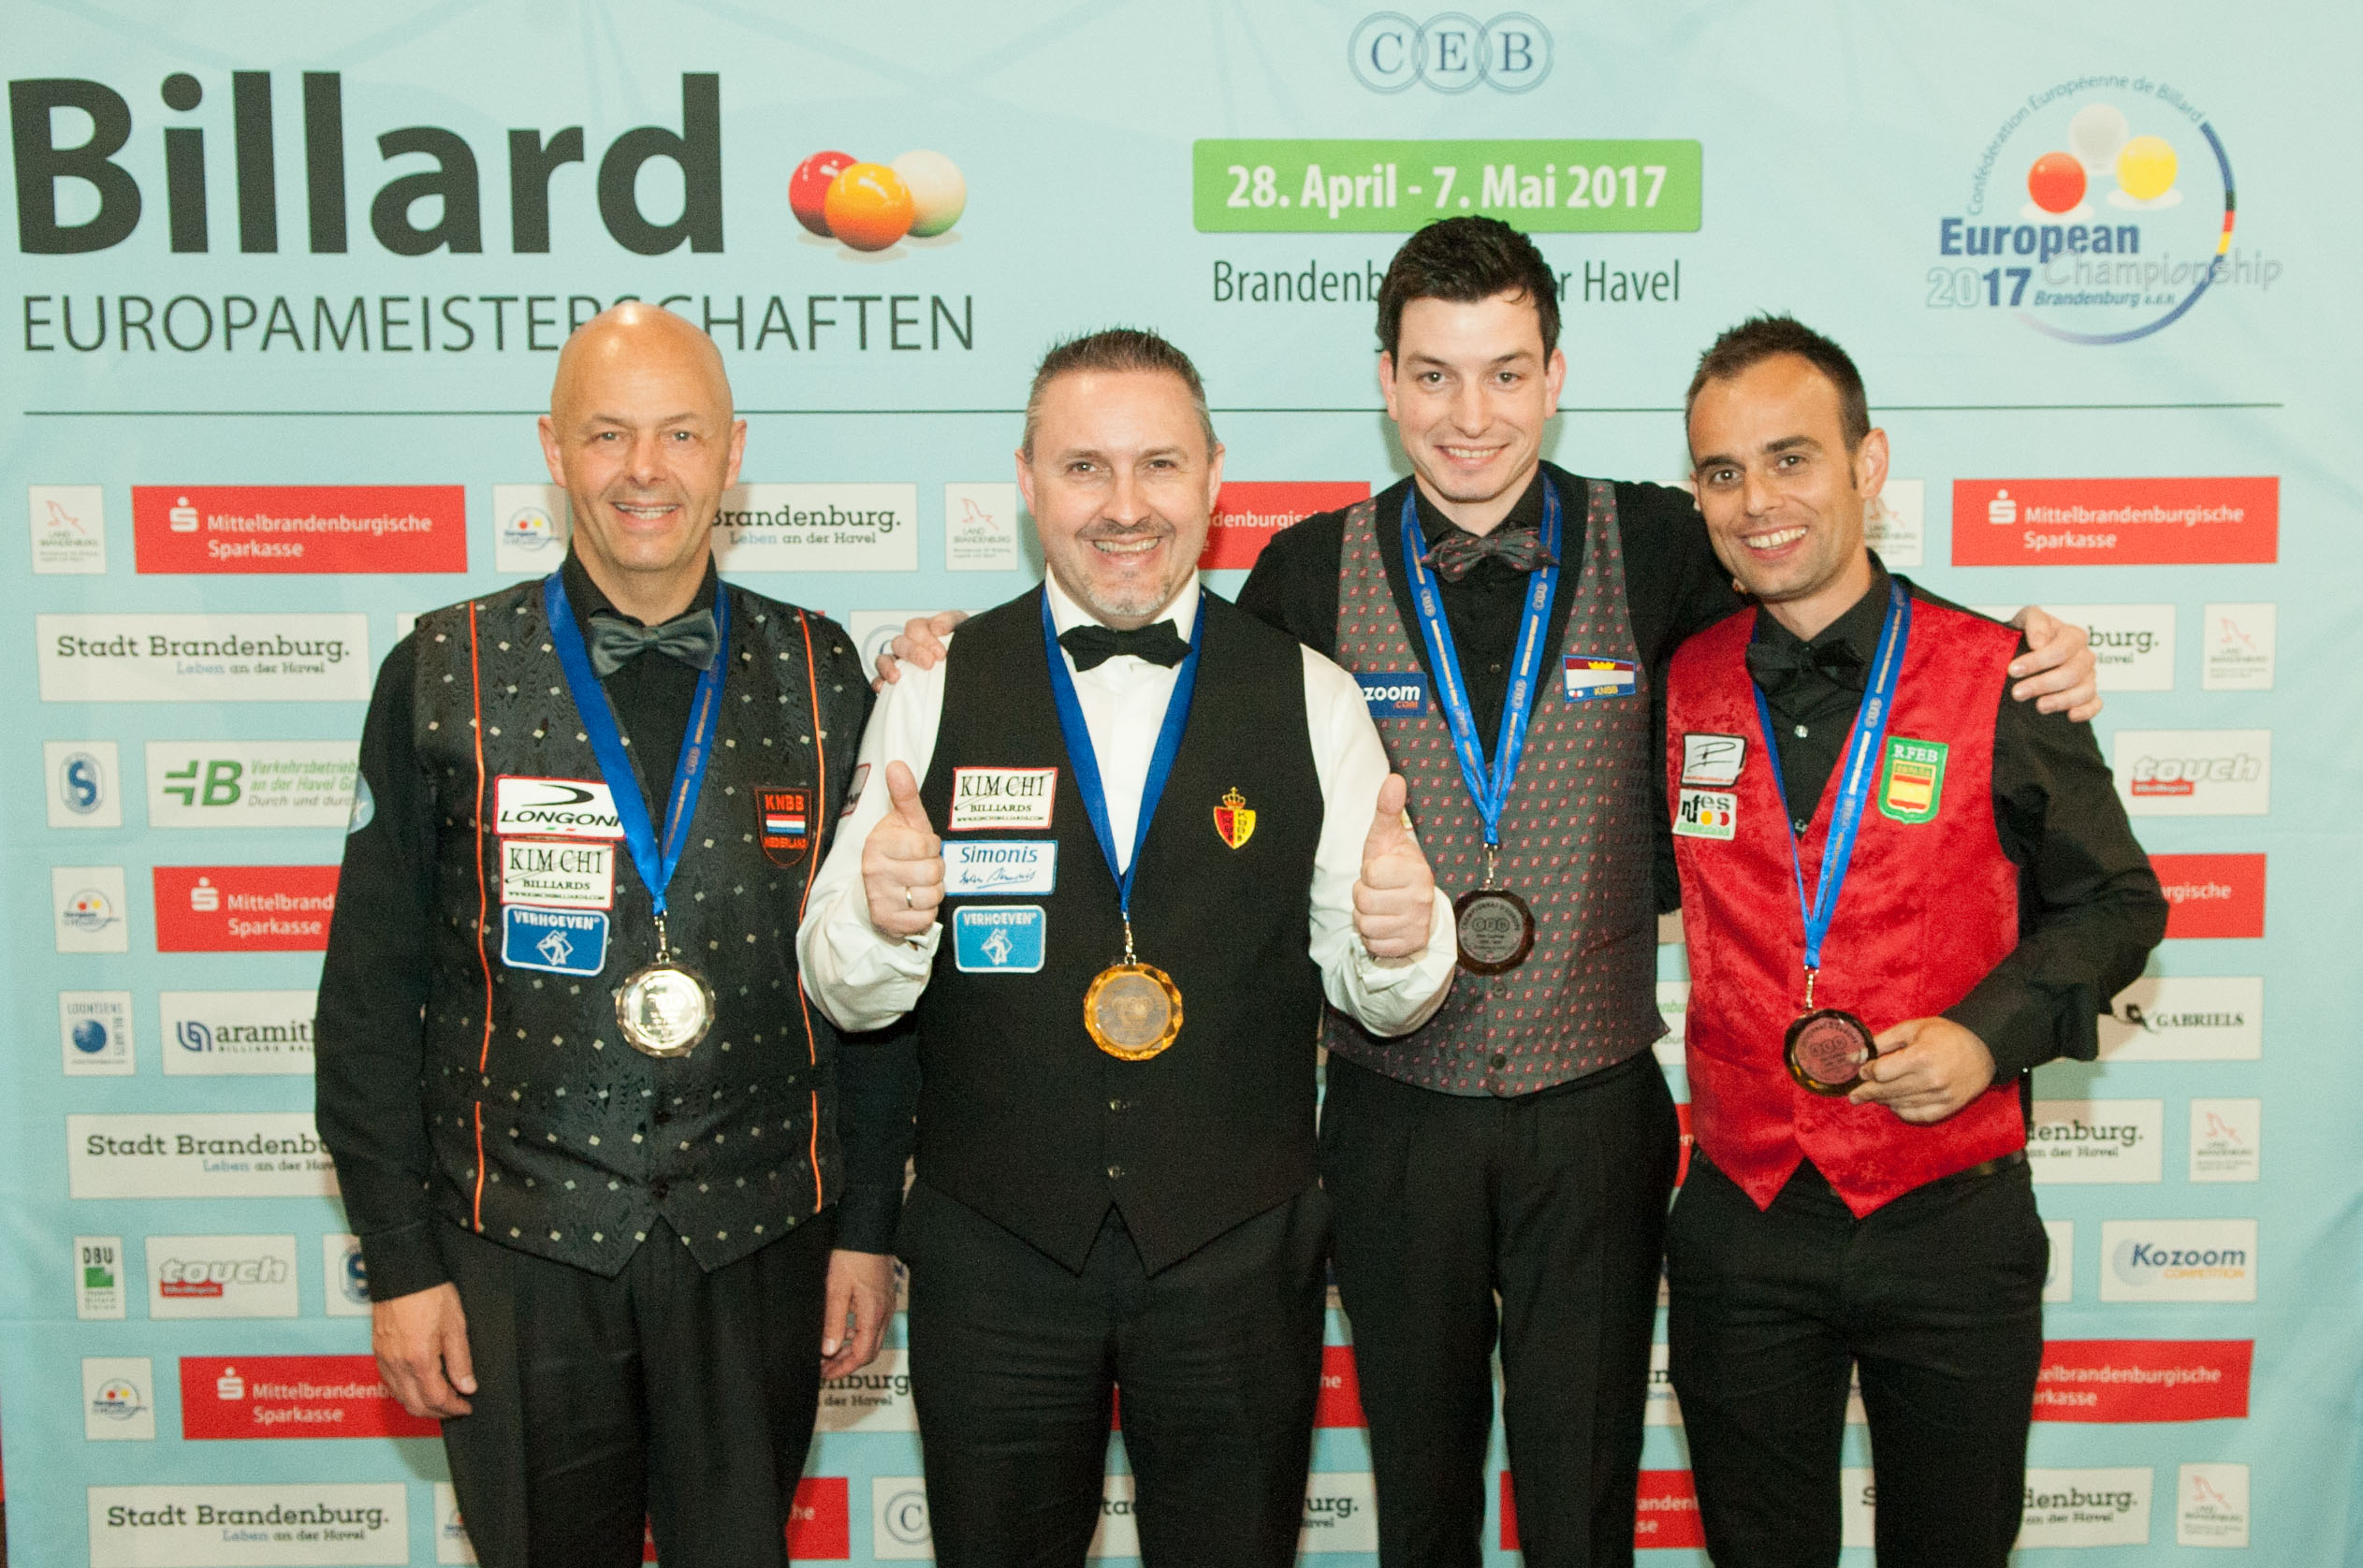 Four new European Champions in Brandenburg